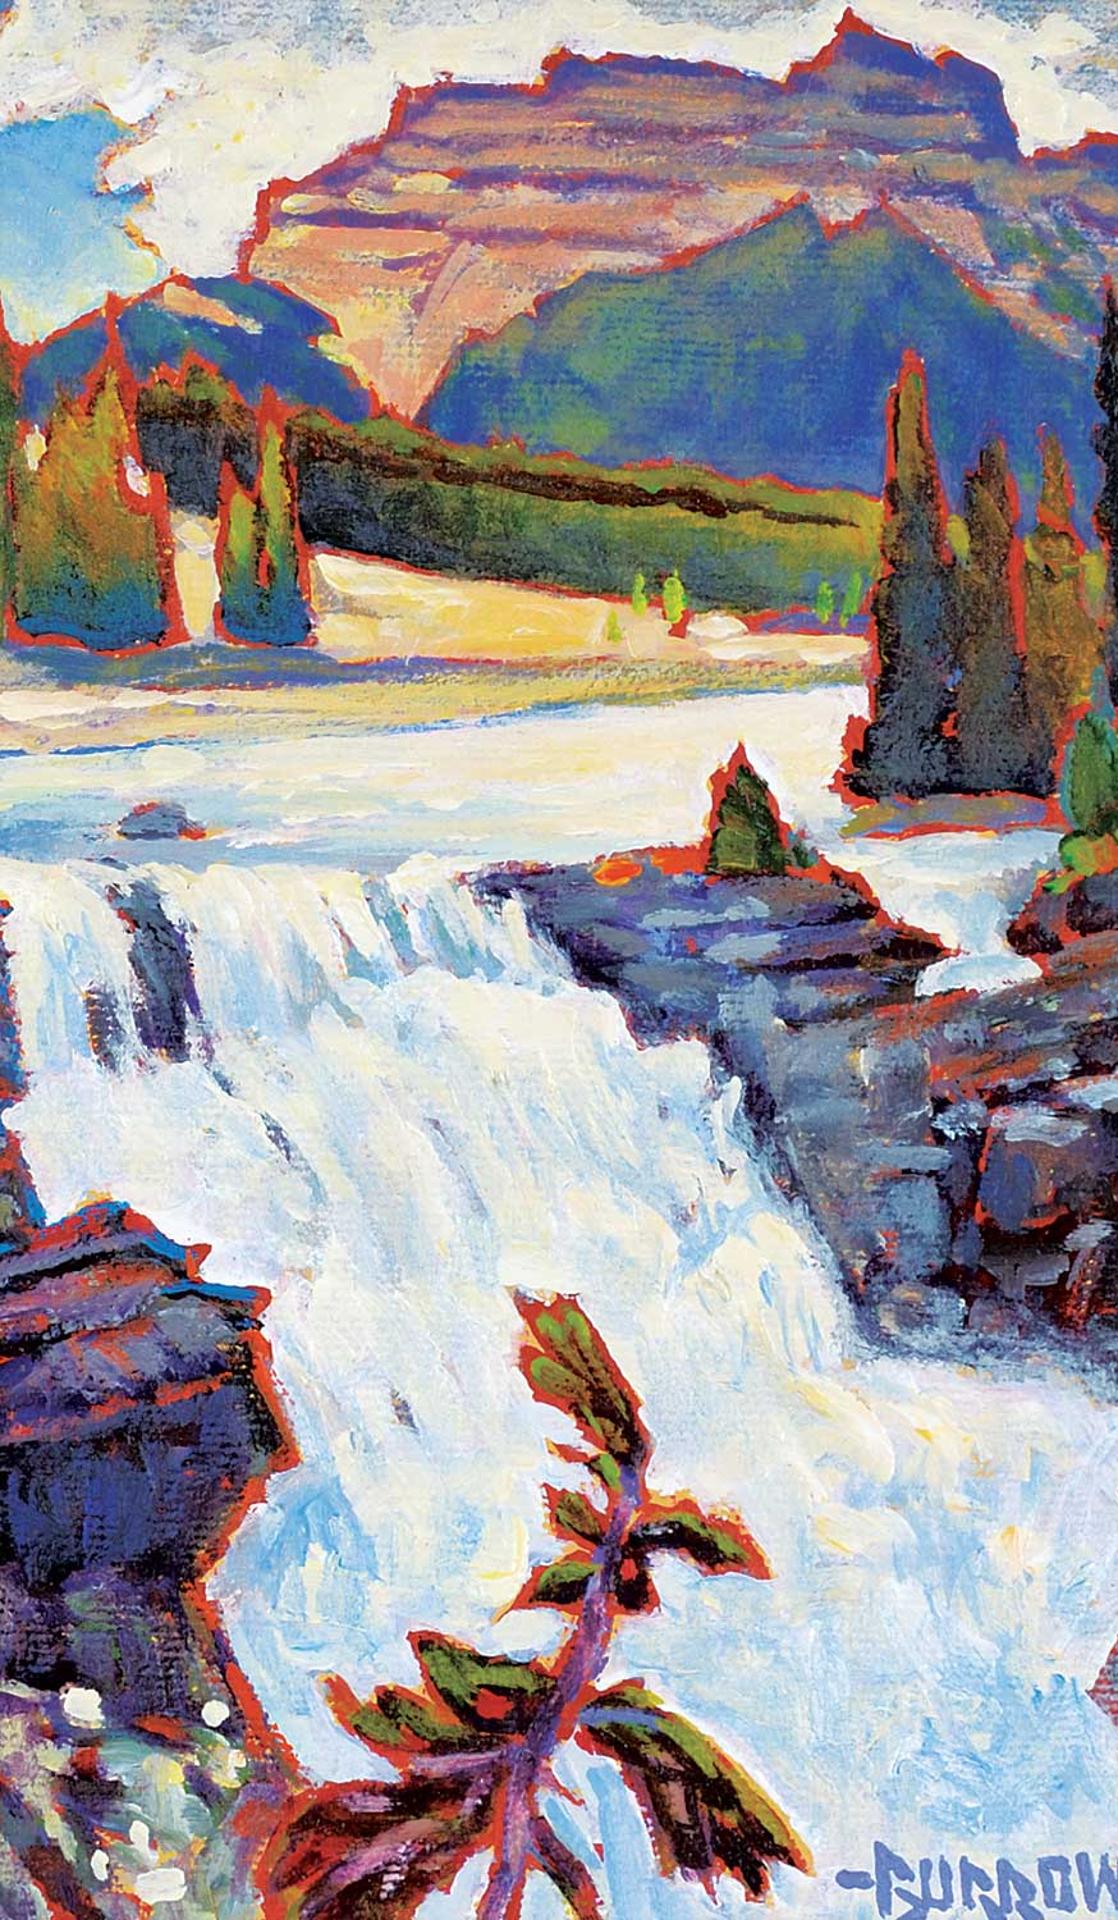 John H. Burrow (1955) - Athabasca Falls